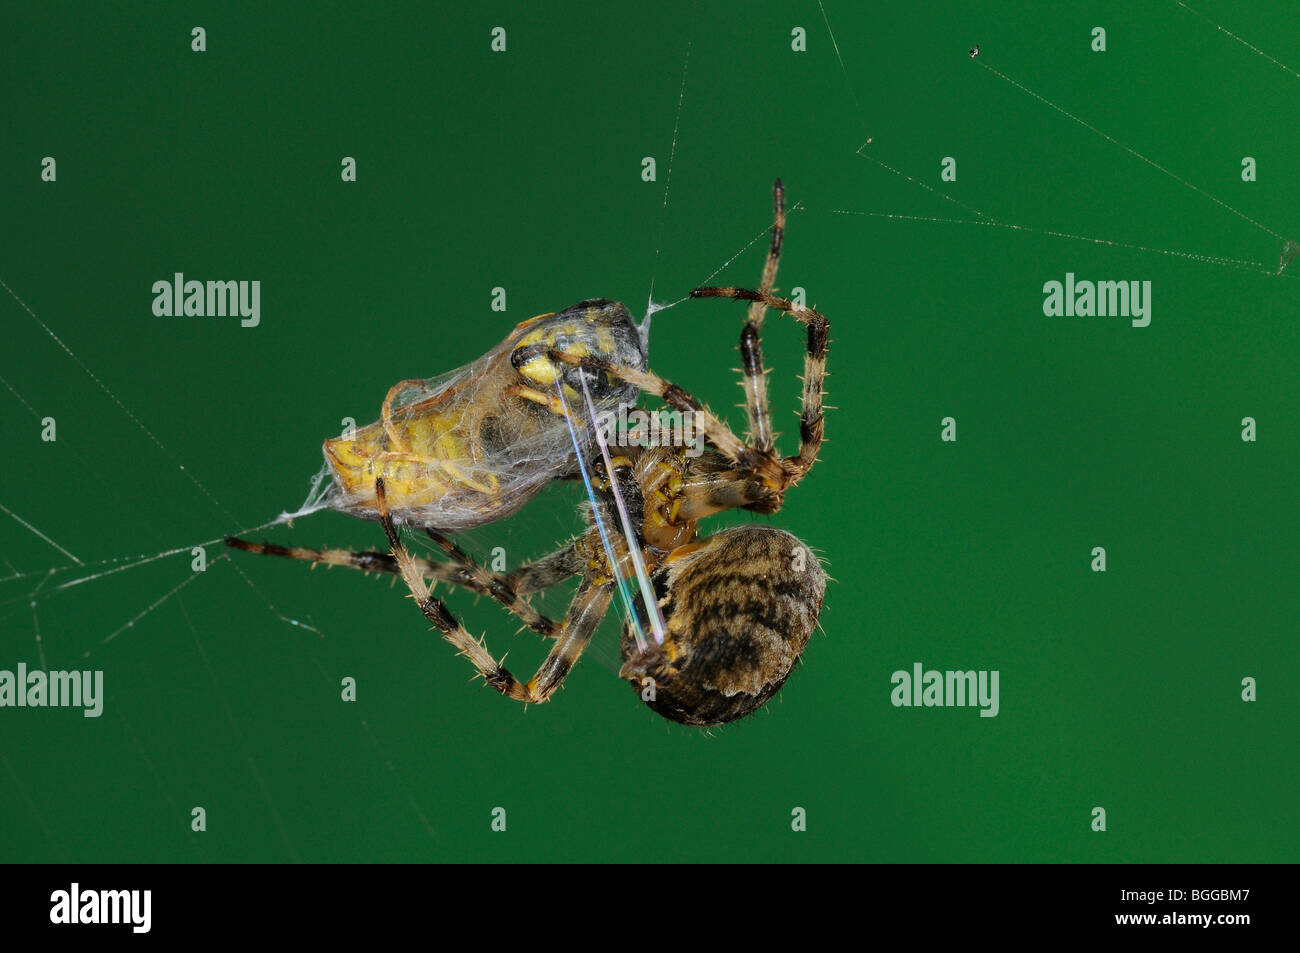 Giardino Orb Spider (Araneus diadematus) avvolgimento su comuni wasp con seta da spinnerettes, Oxfordshire, Regno Unito. Foto Stock